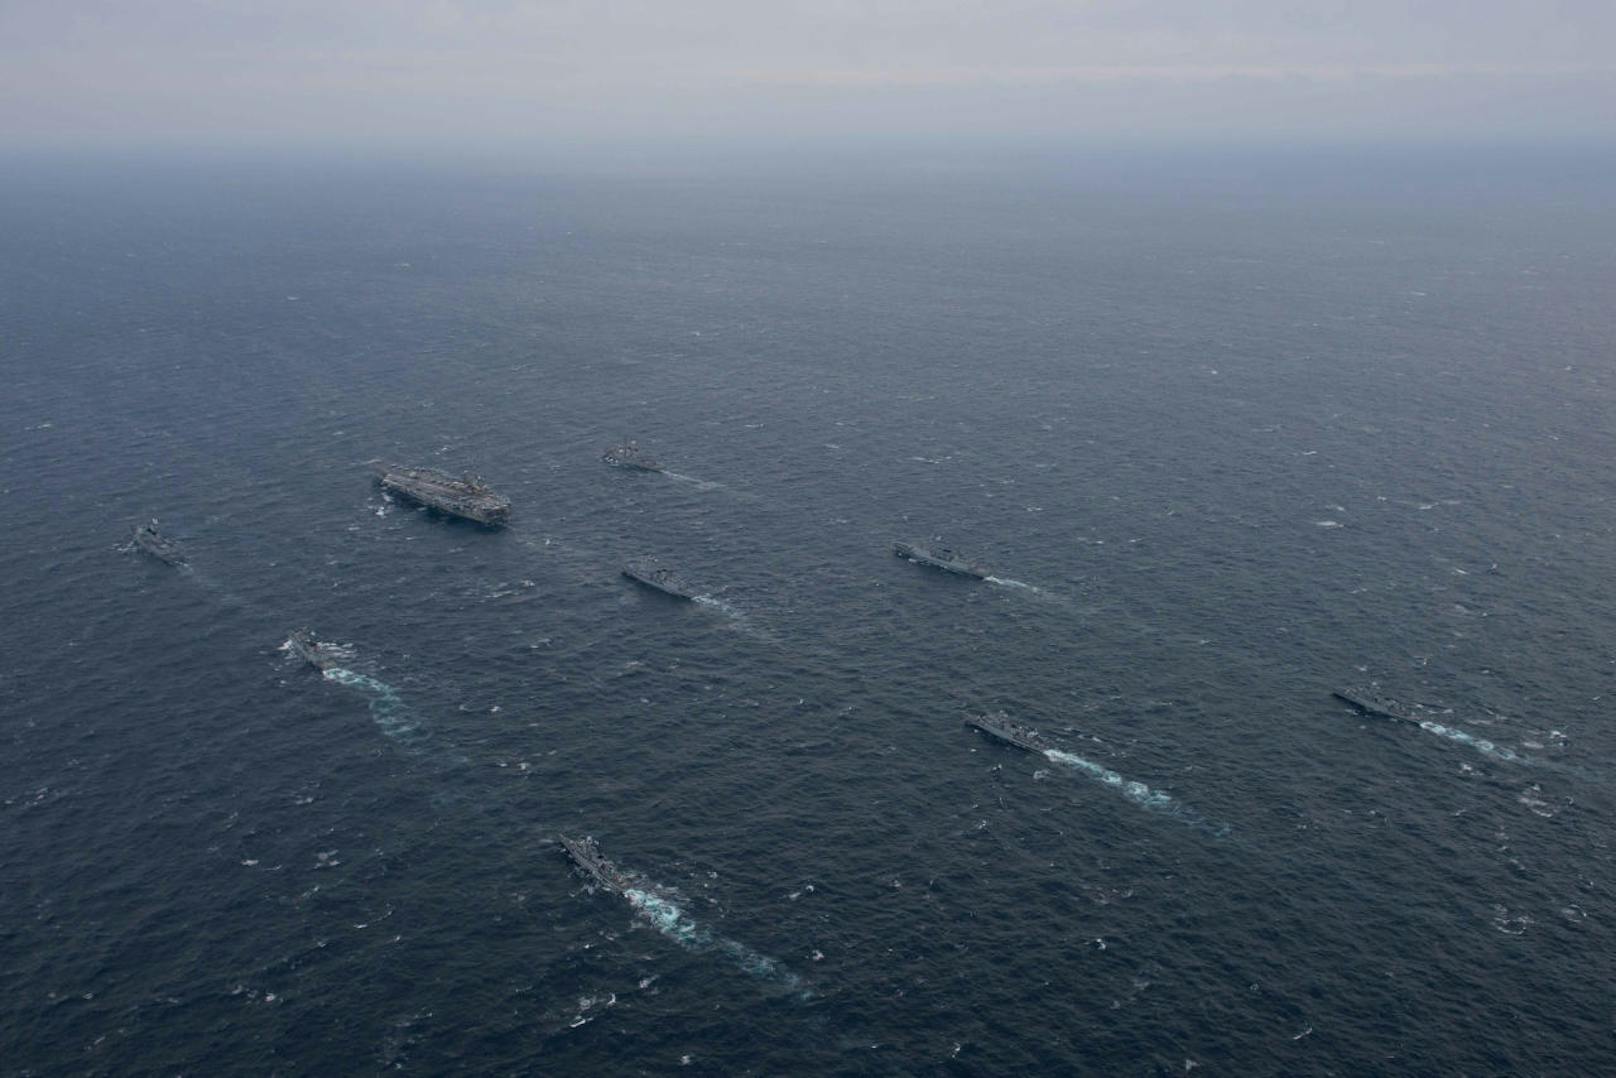 Der US-Flugzeugträger USS Ronald Reagan kreuzt vor der nordkoreanischen Küste.